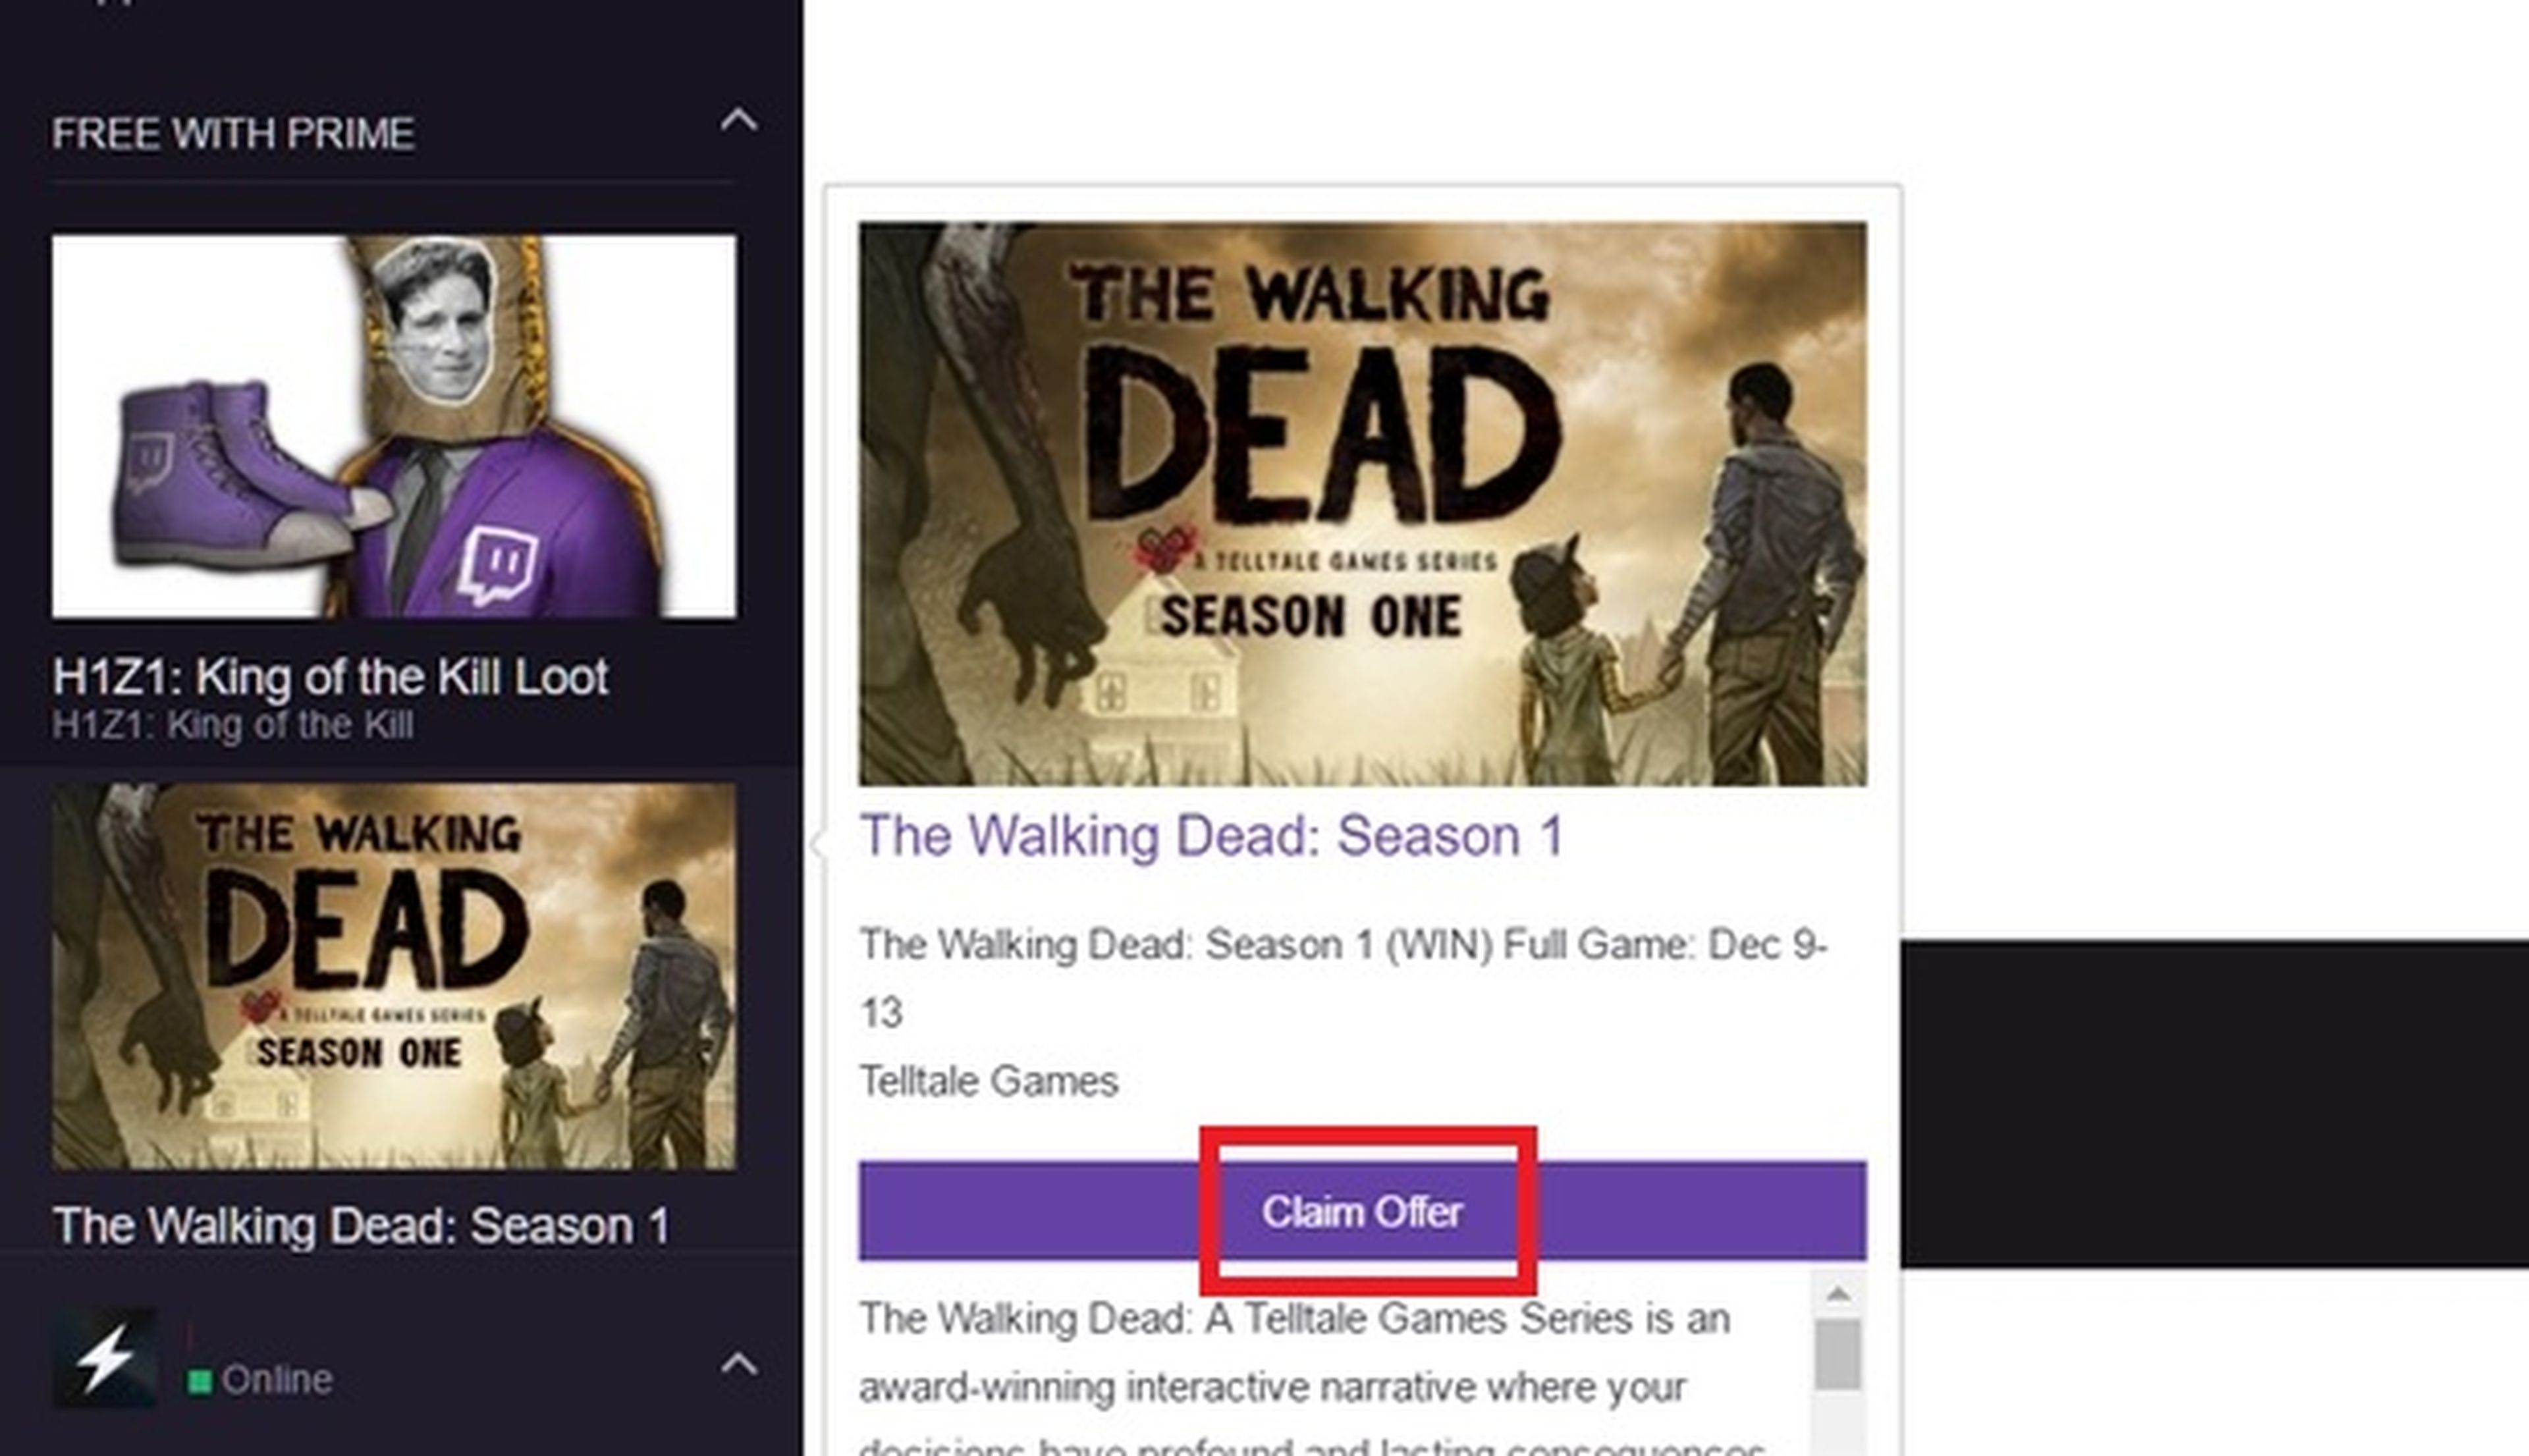 Descarga The Walking Dead Season 1 gratis para PC gracias a Amazon